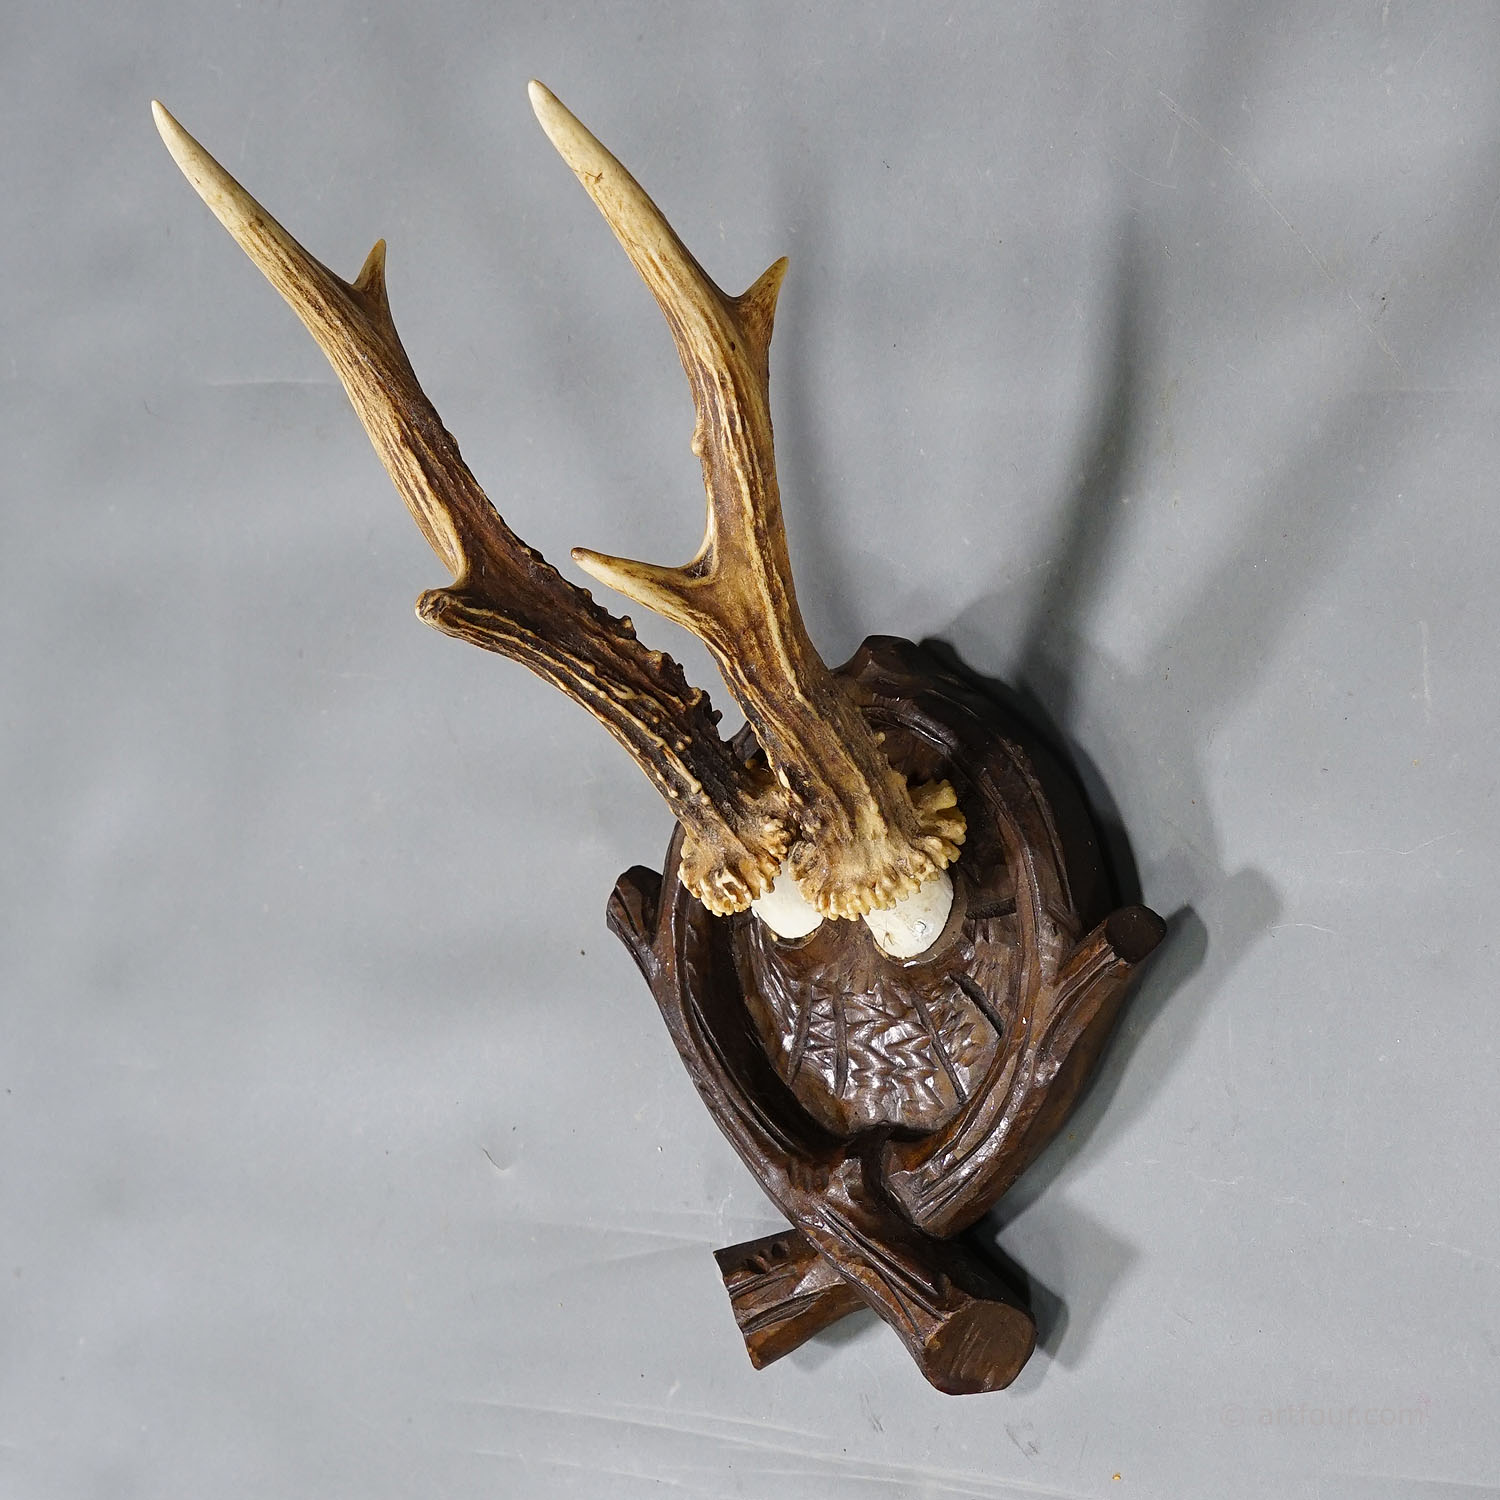 Antique Black Forest Roe Deer Trophy on Carved Plaque